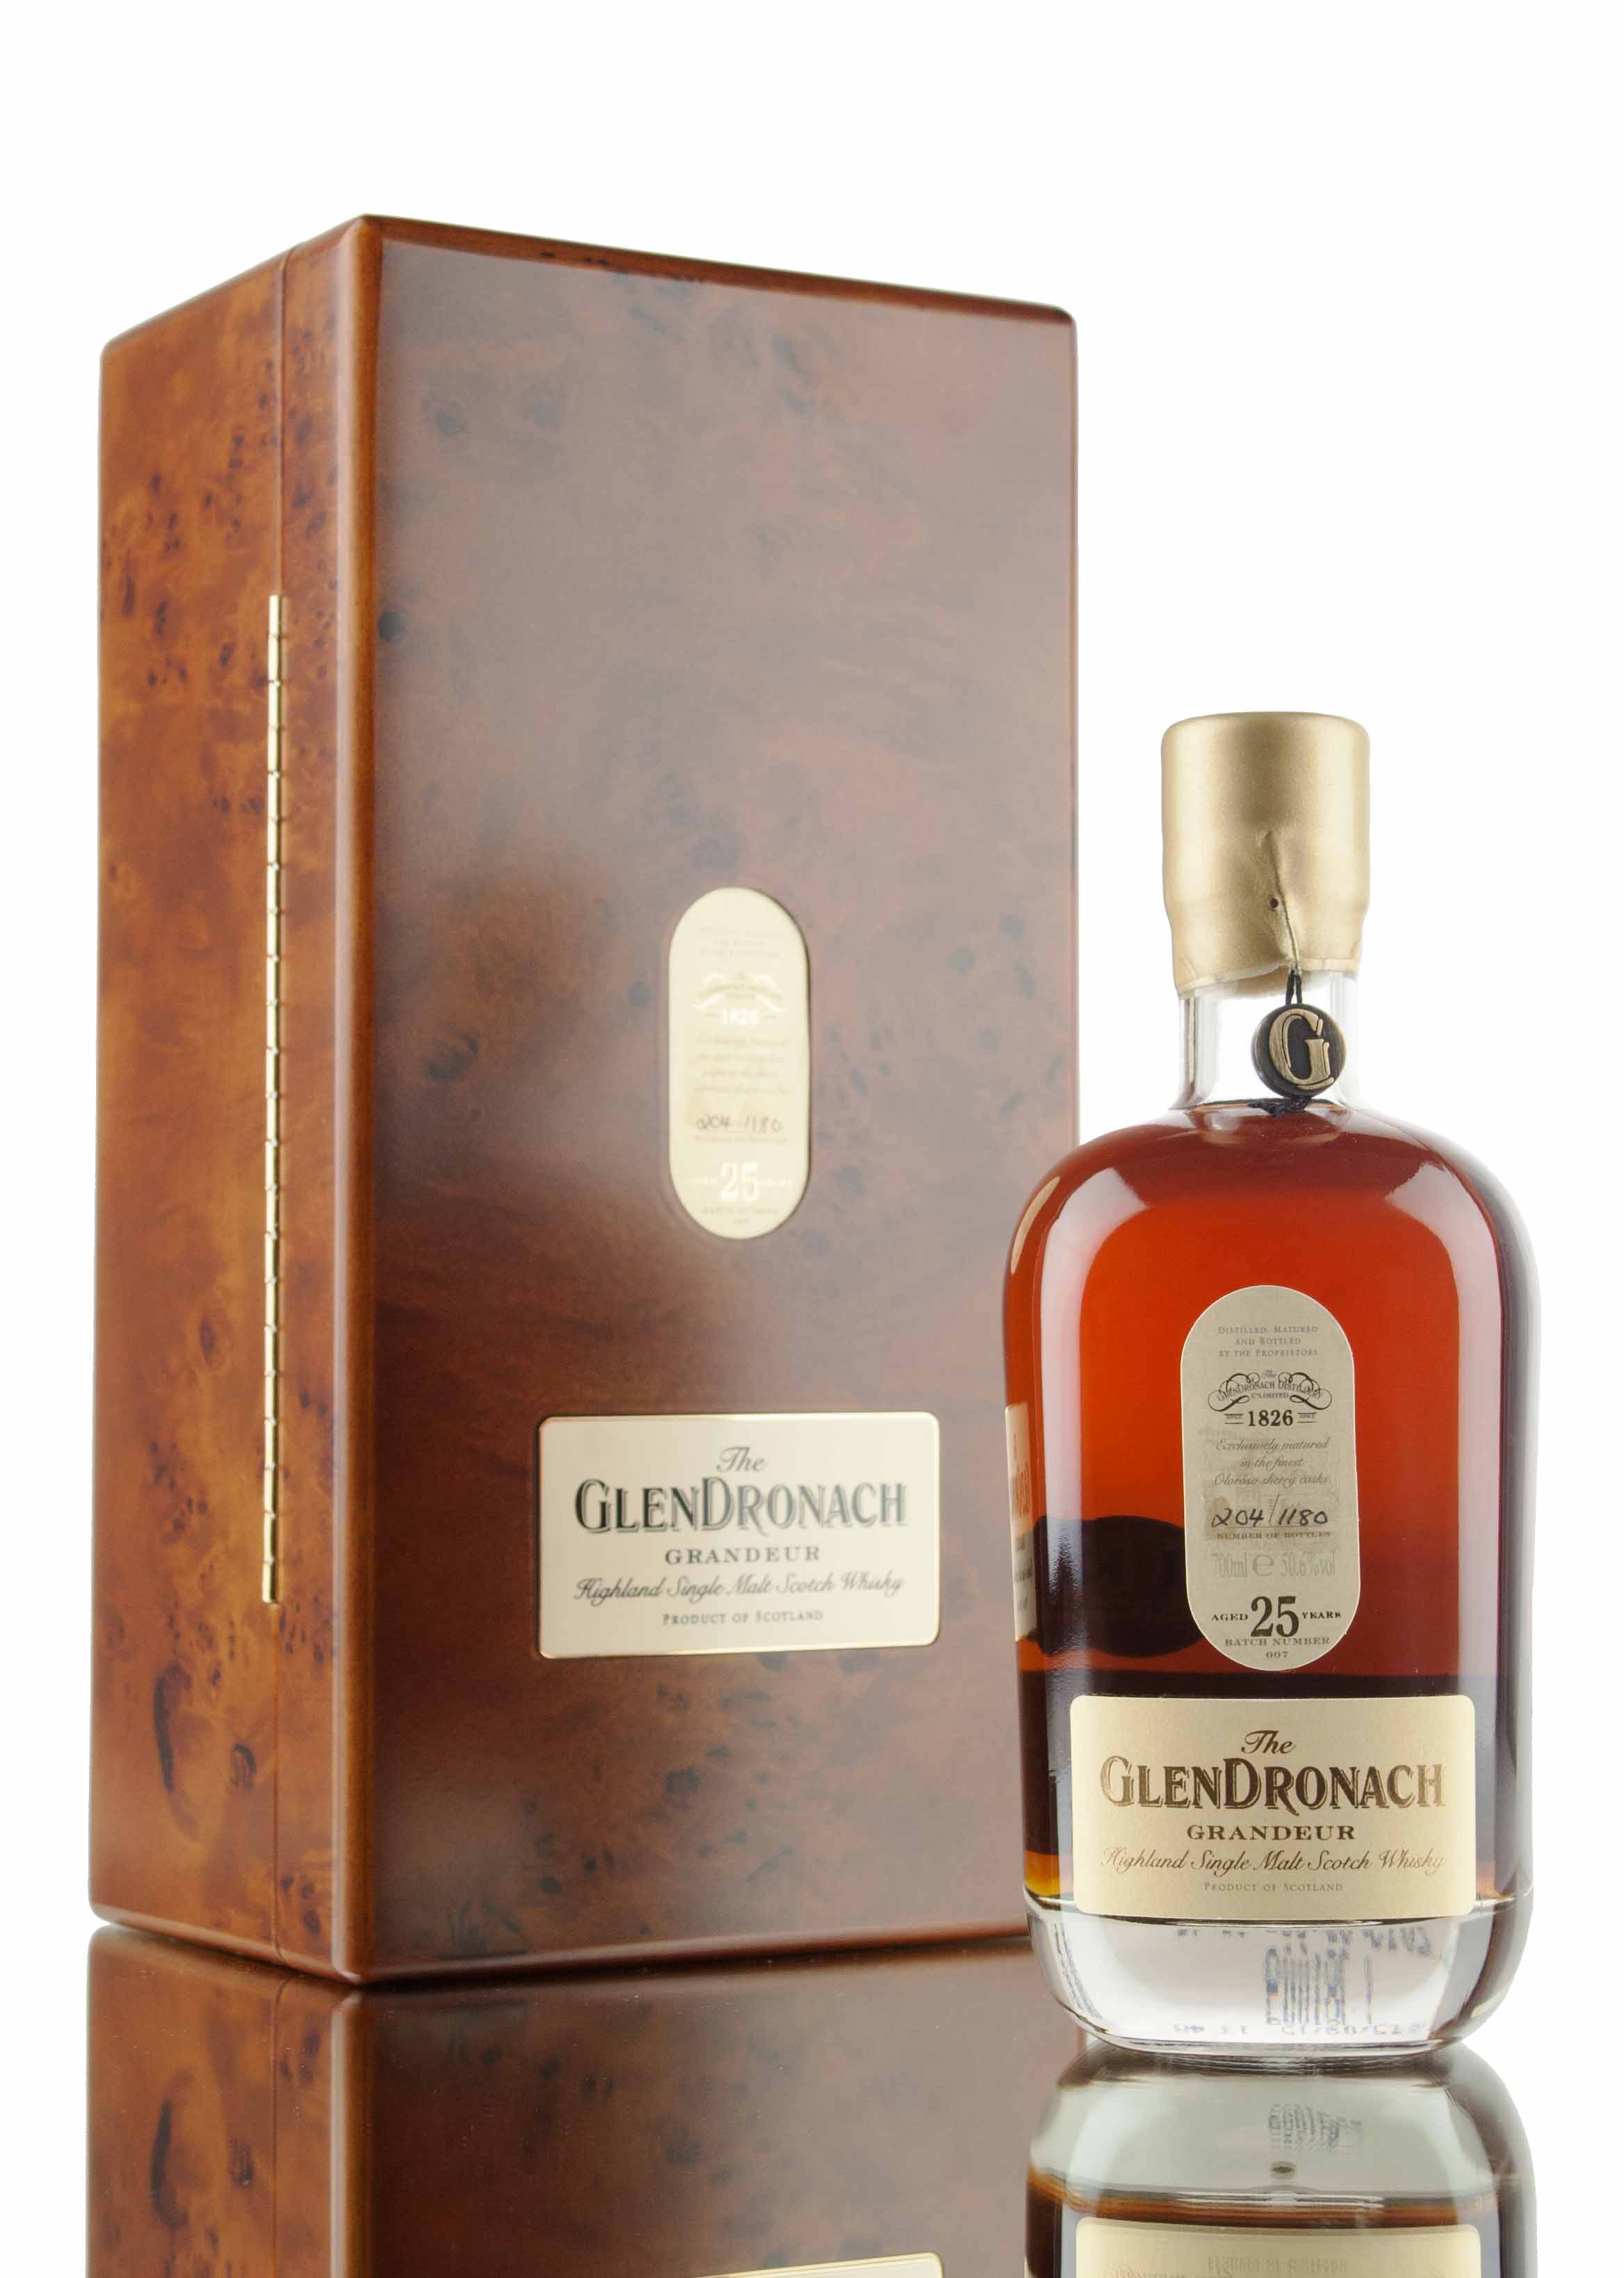 GlenDronach Grandeur 25 Year Old / Batch 007